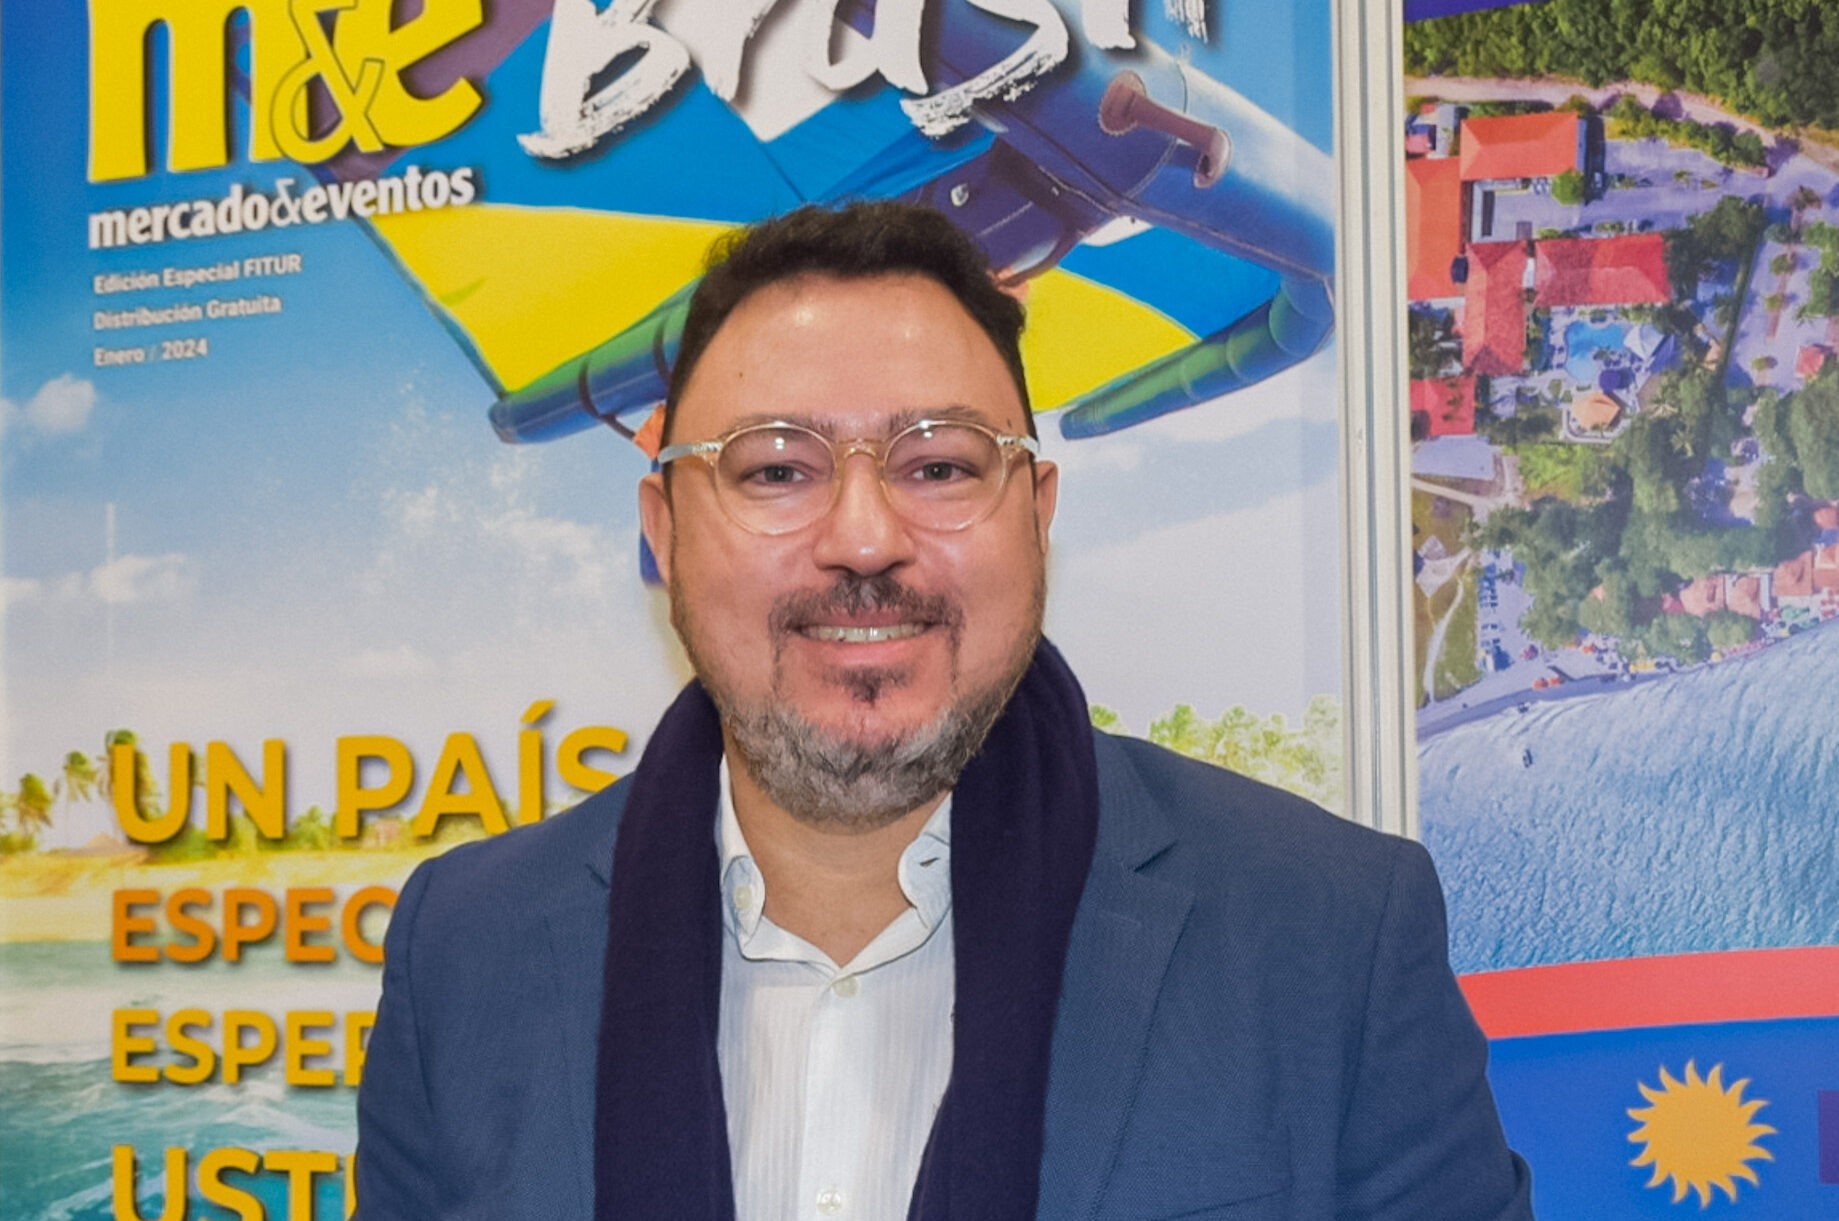 IMG 0698 e1709726530628 Novos voos, venda de pacotes no estande e alta de estrangeiros: Bahia destaca novidades na ITB